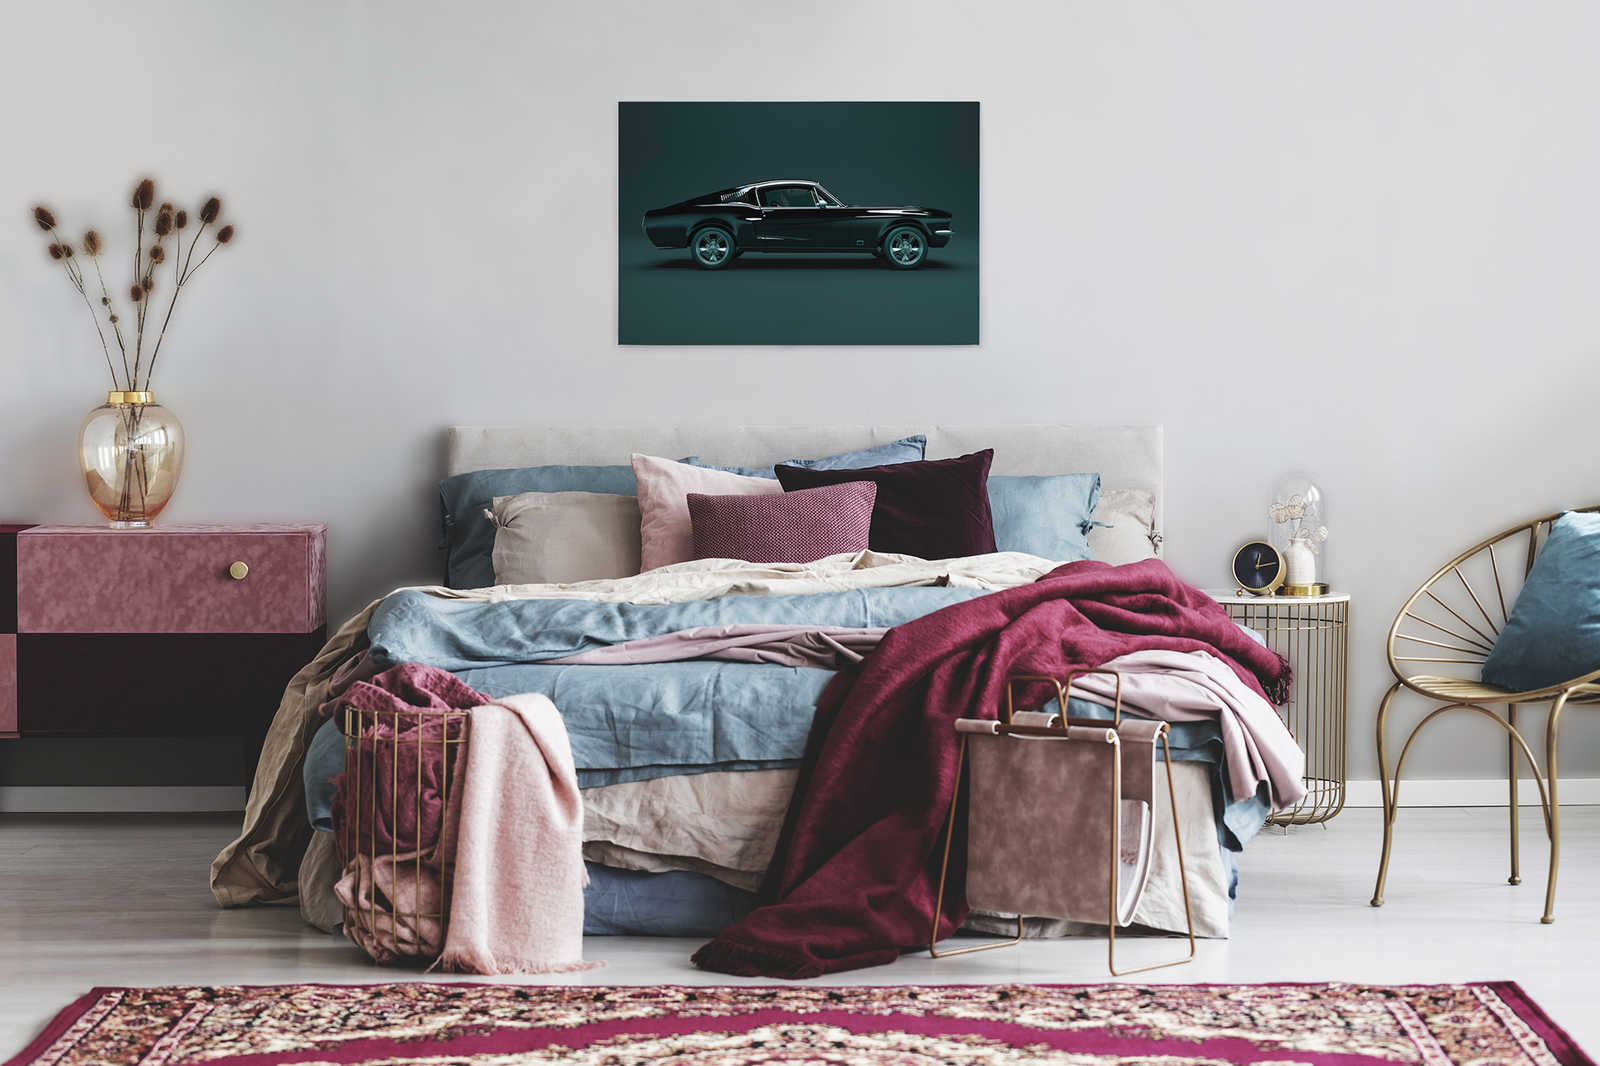             Mustang 1 - Canvas schilderij, zijaanzicht Mustang, vintage - 0.90 m x 0.60 m
        